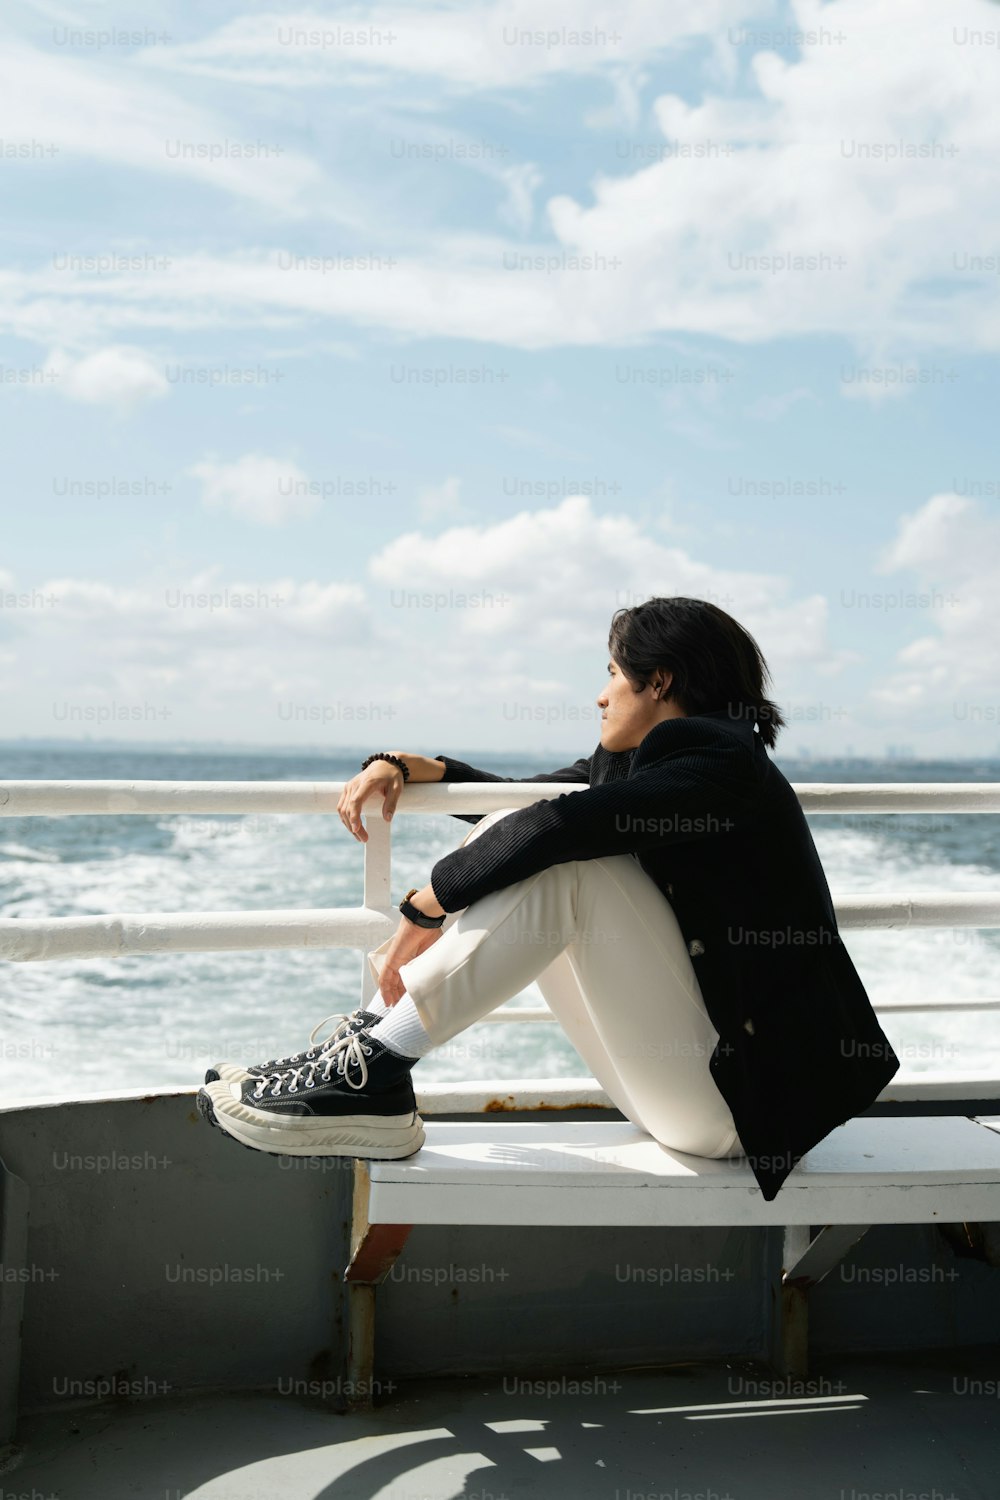 eine person, die auf einer bank in der nähe des ozeans sitzt